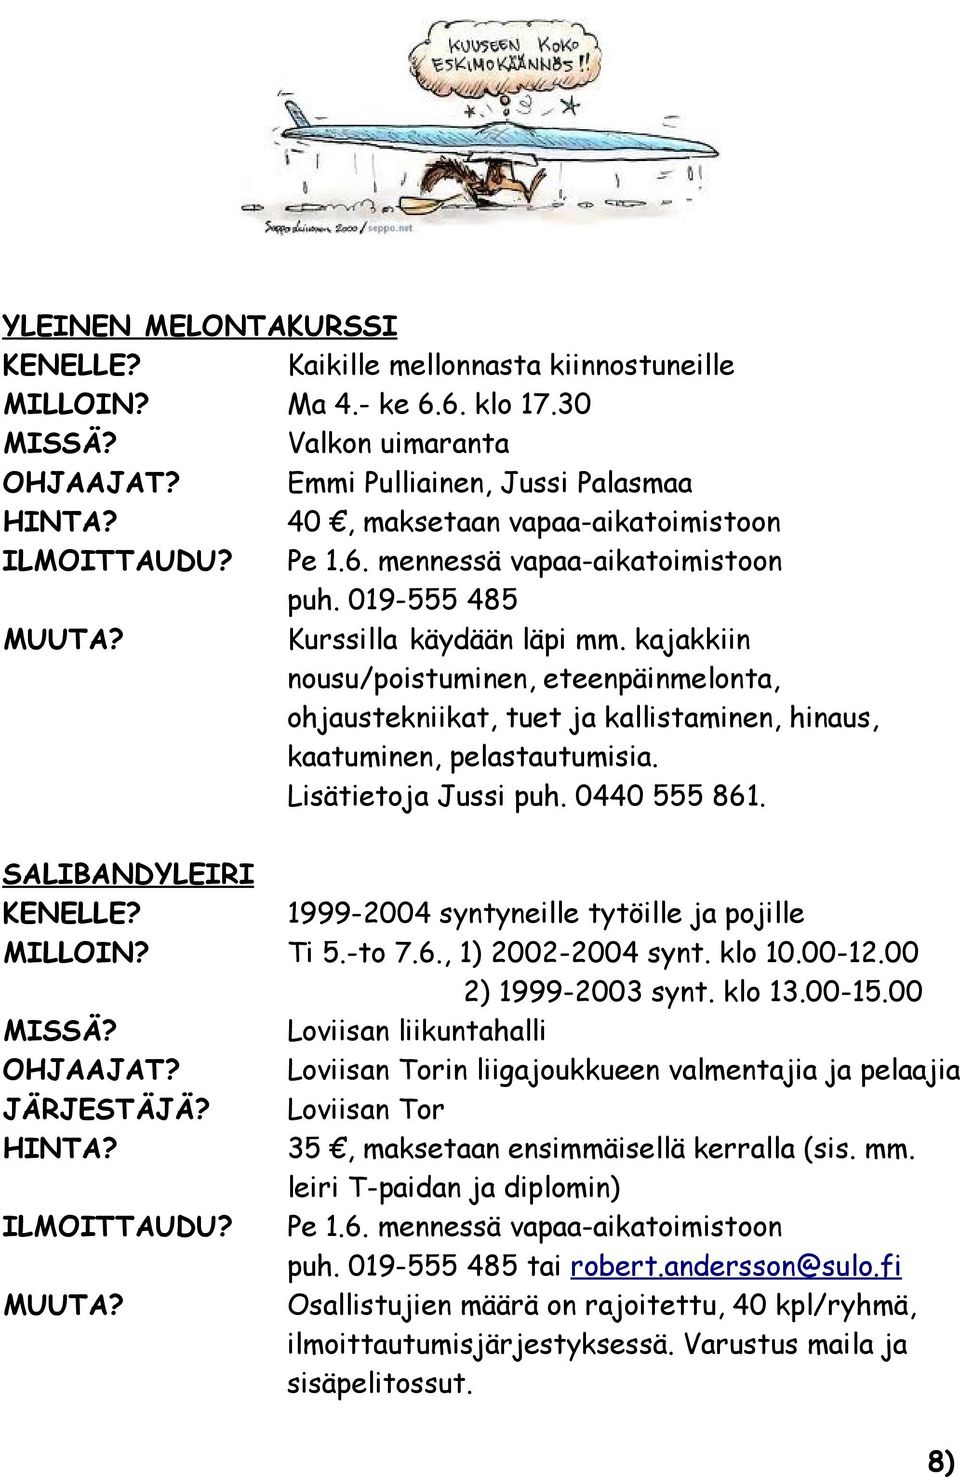 Lisätietoja Jussi puh. 0440 555 861. SALIBANDYLEIRI 1999-2004 syntyneille tytöille ja pojille MILLOIN? Ti 5.-to 7.6., 1) 2002-2004 synt. klo 10.00-12.00 2) 1999-2003 synt. klo 13.00-15.